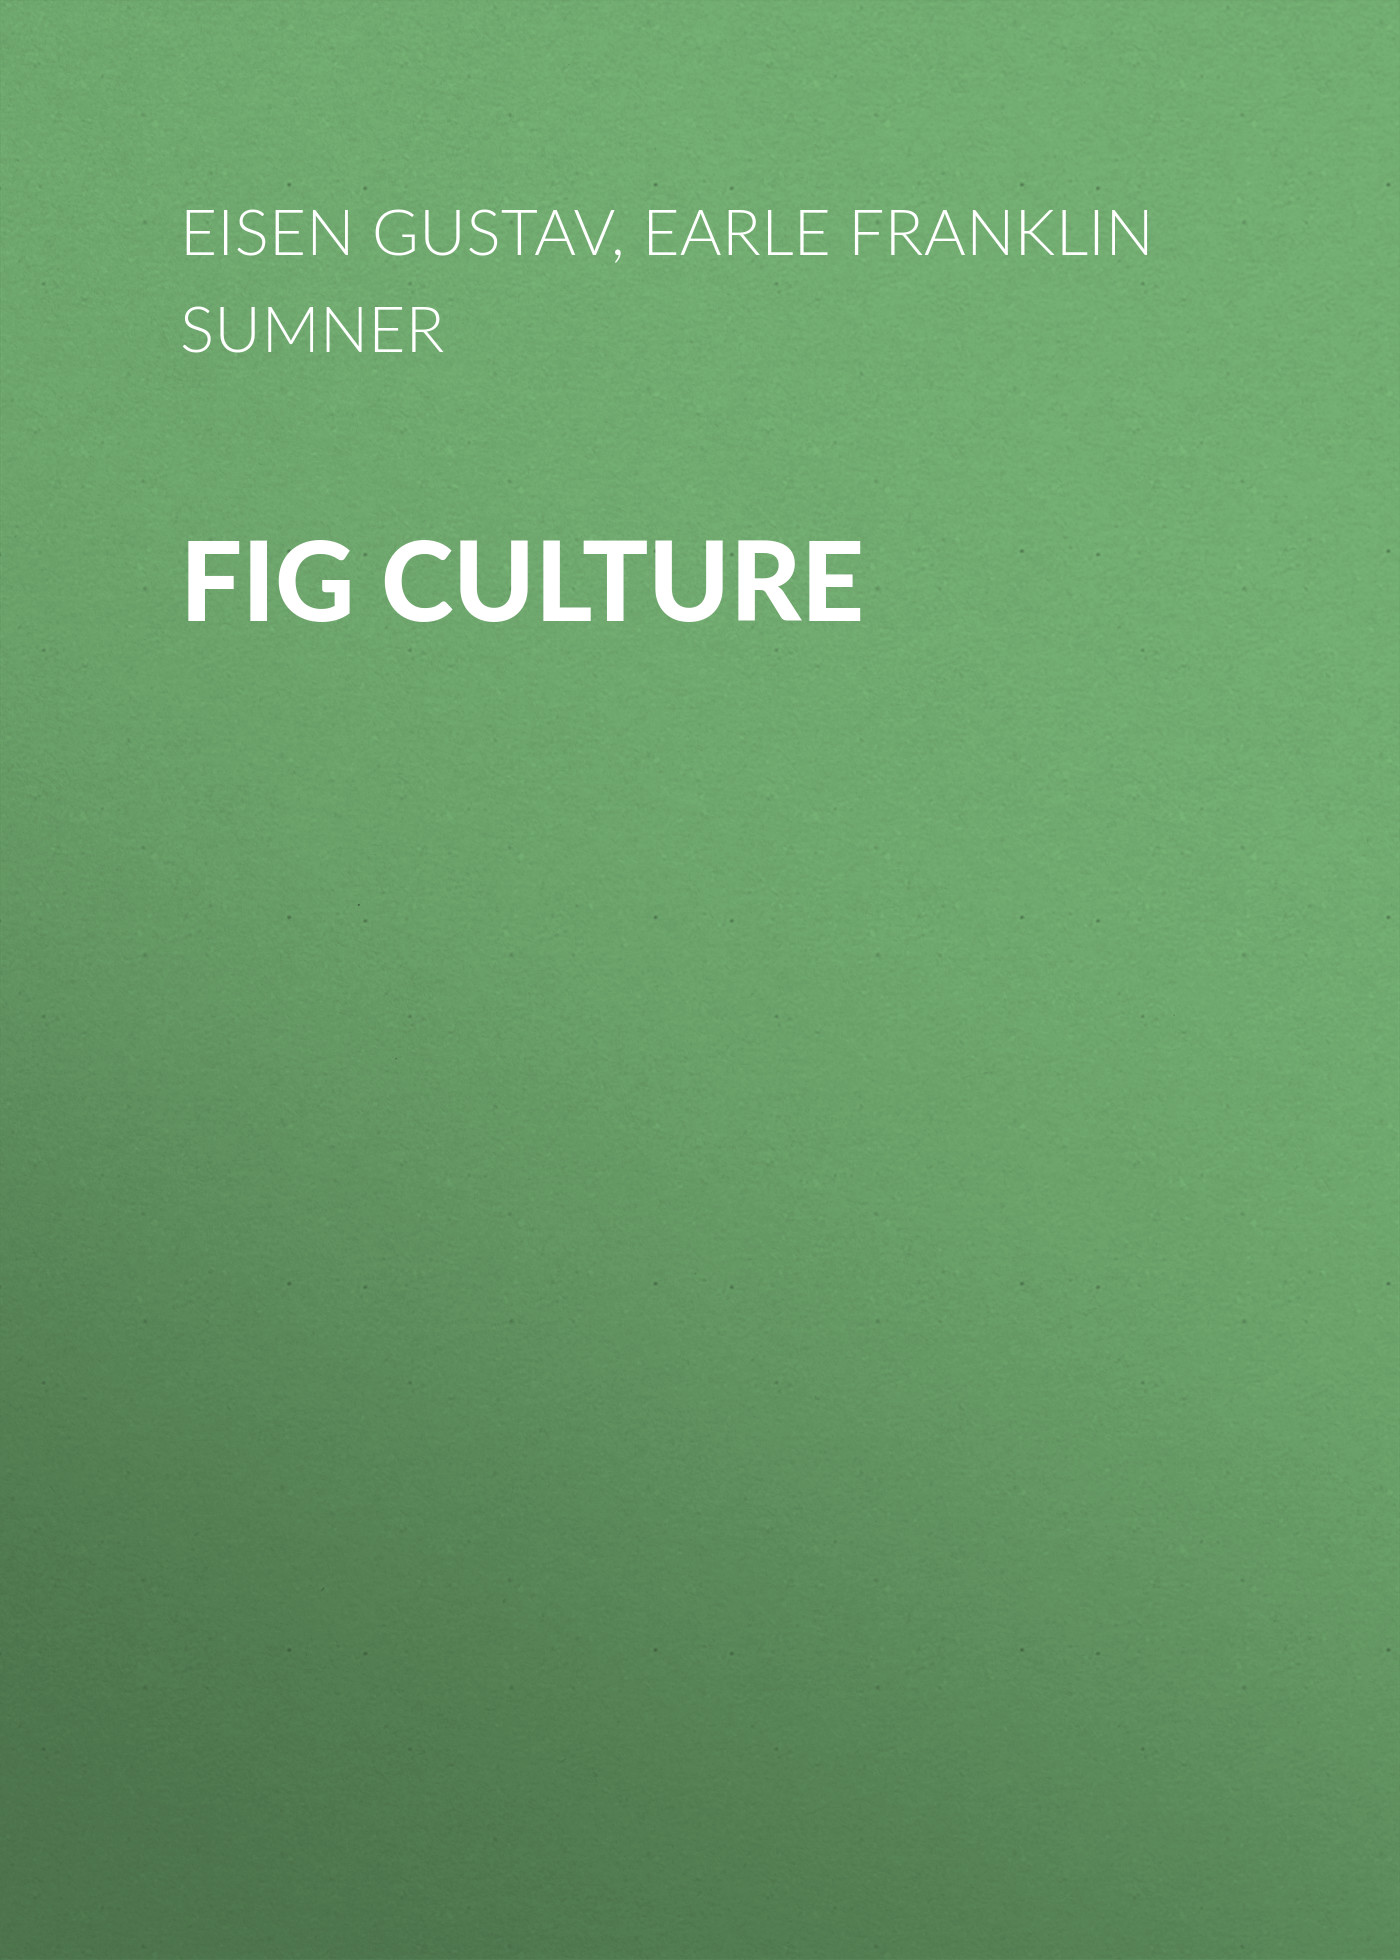 Книга Fig Culture из серии , созданная Gustav Eisen, Franklin Earle, может относится к жанру Зарубежная старинная литература, Зарубежная классика. Стоимость электронной книги Fig Culture с идентификатором 24620901 составляет 0 руб.